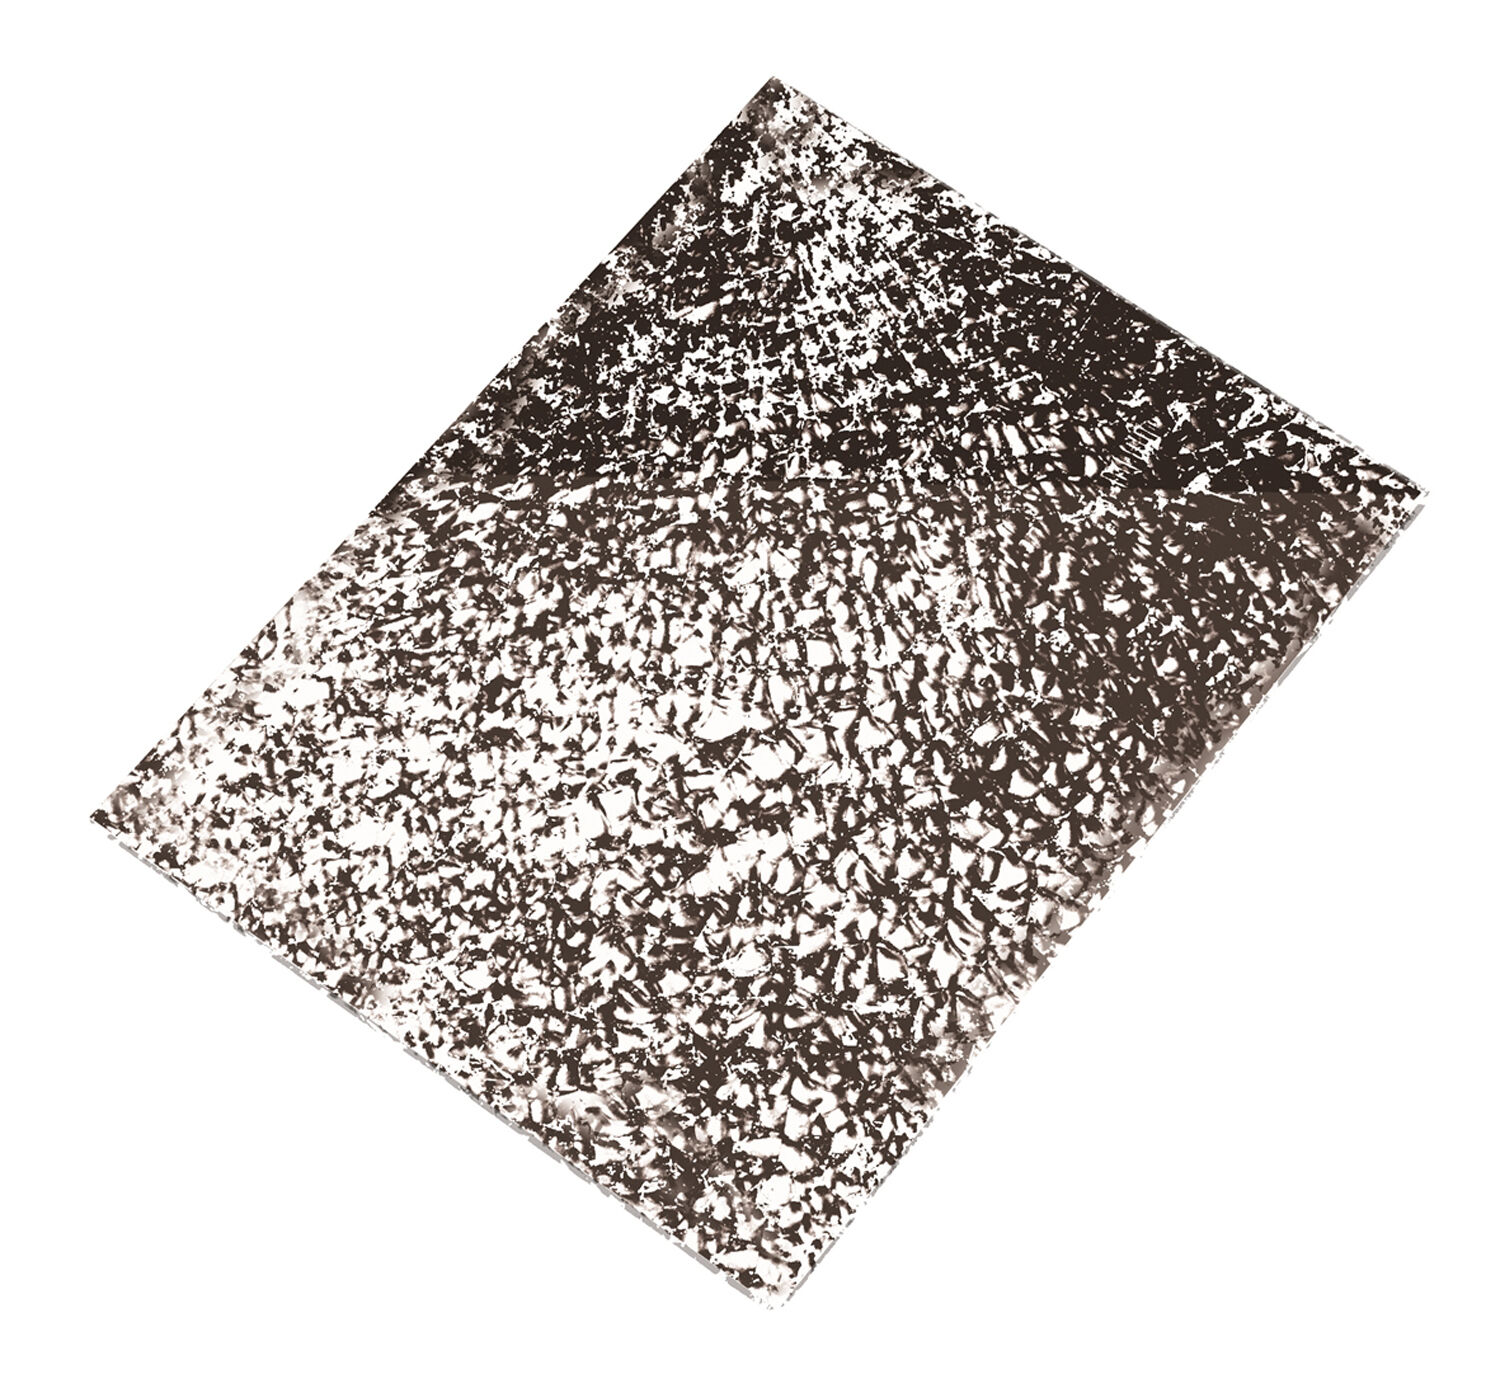 NEU Crackle Mosaik-Platte, 15x20 cm, Spiegel